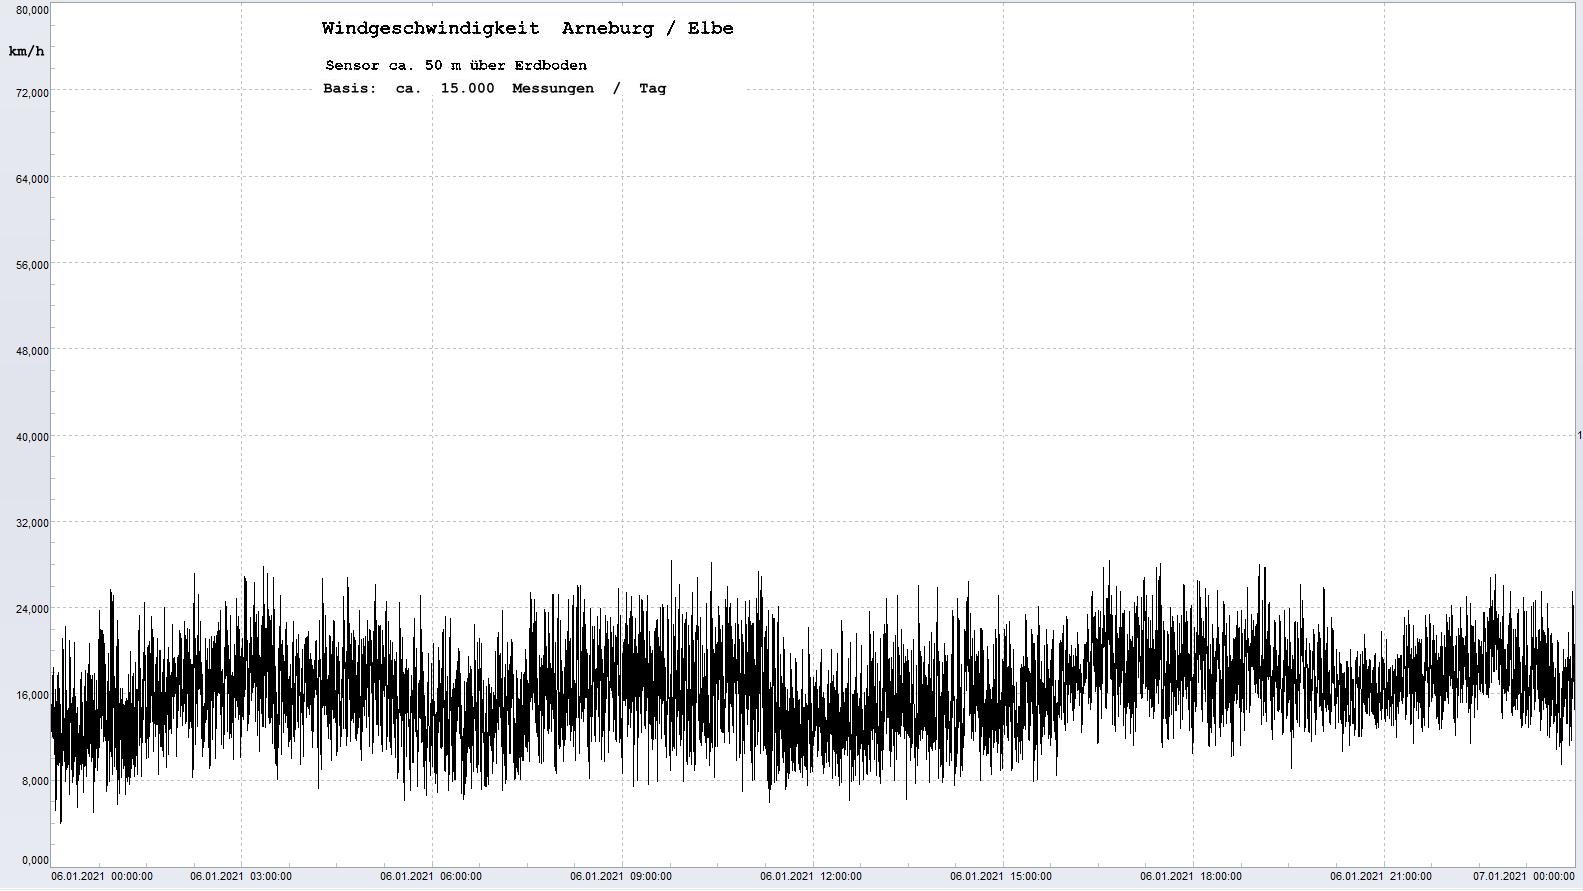 Arneburg Tages-Diagramm Winddaten, 06.01.2021
  Diagramm, Sensor auf Gebäude, ca. 50 m über Erdboden, Basis: 5s-Aufzeichnung